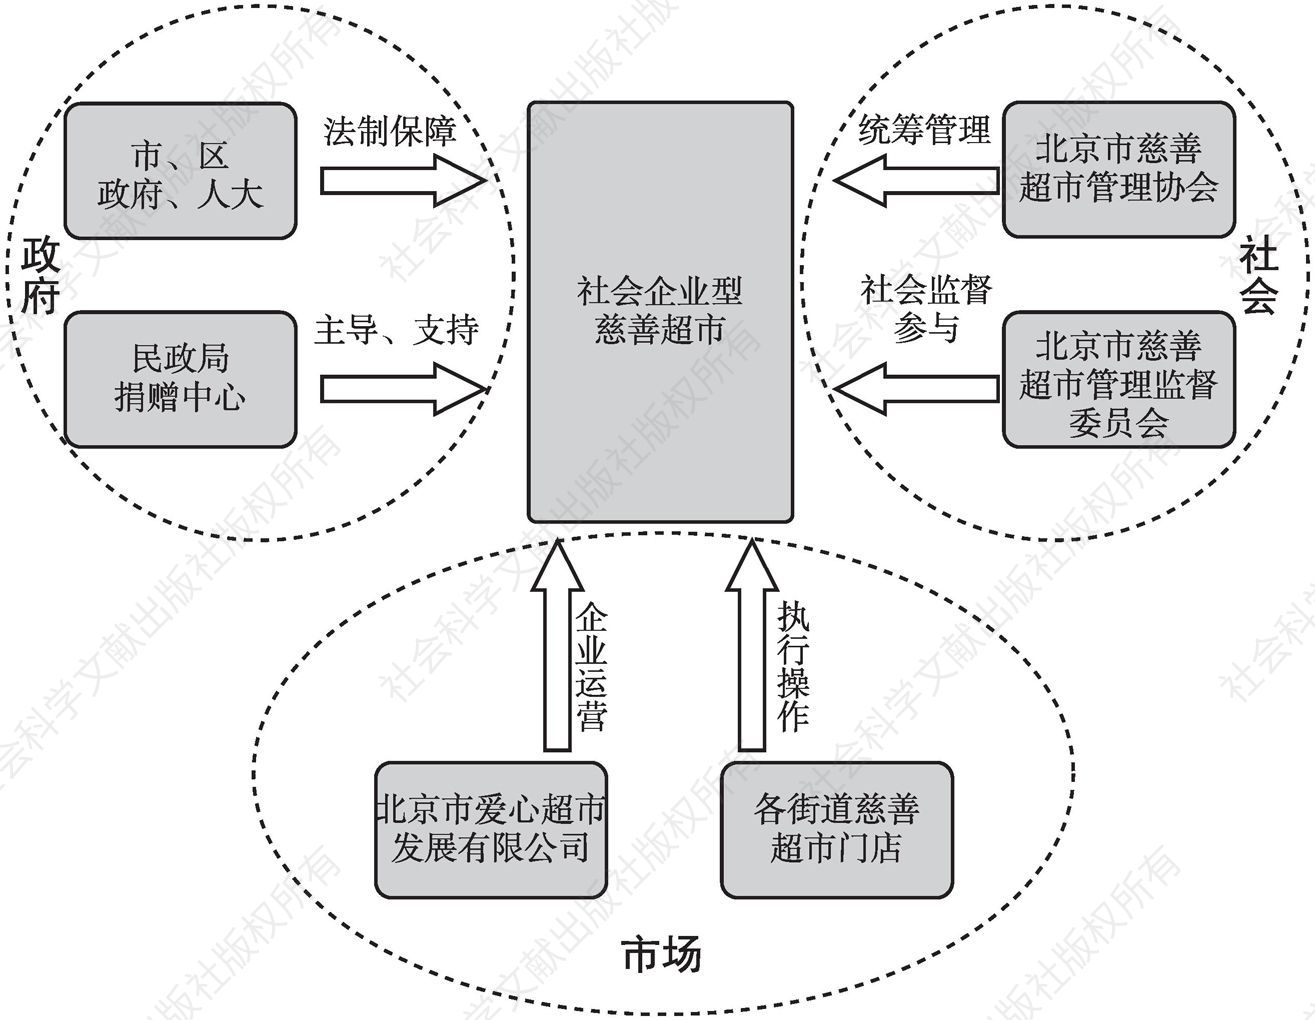 图7 北京市社会企业型慈善超市的运营模式